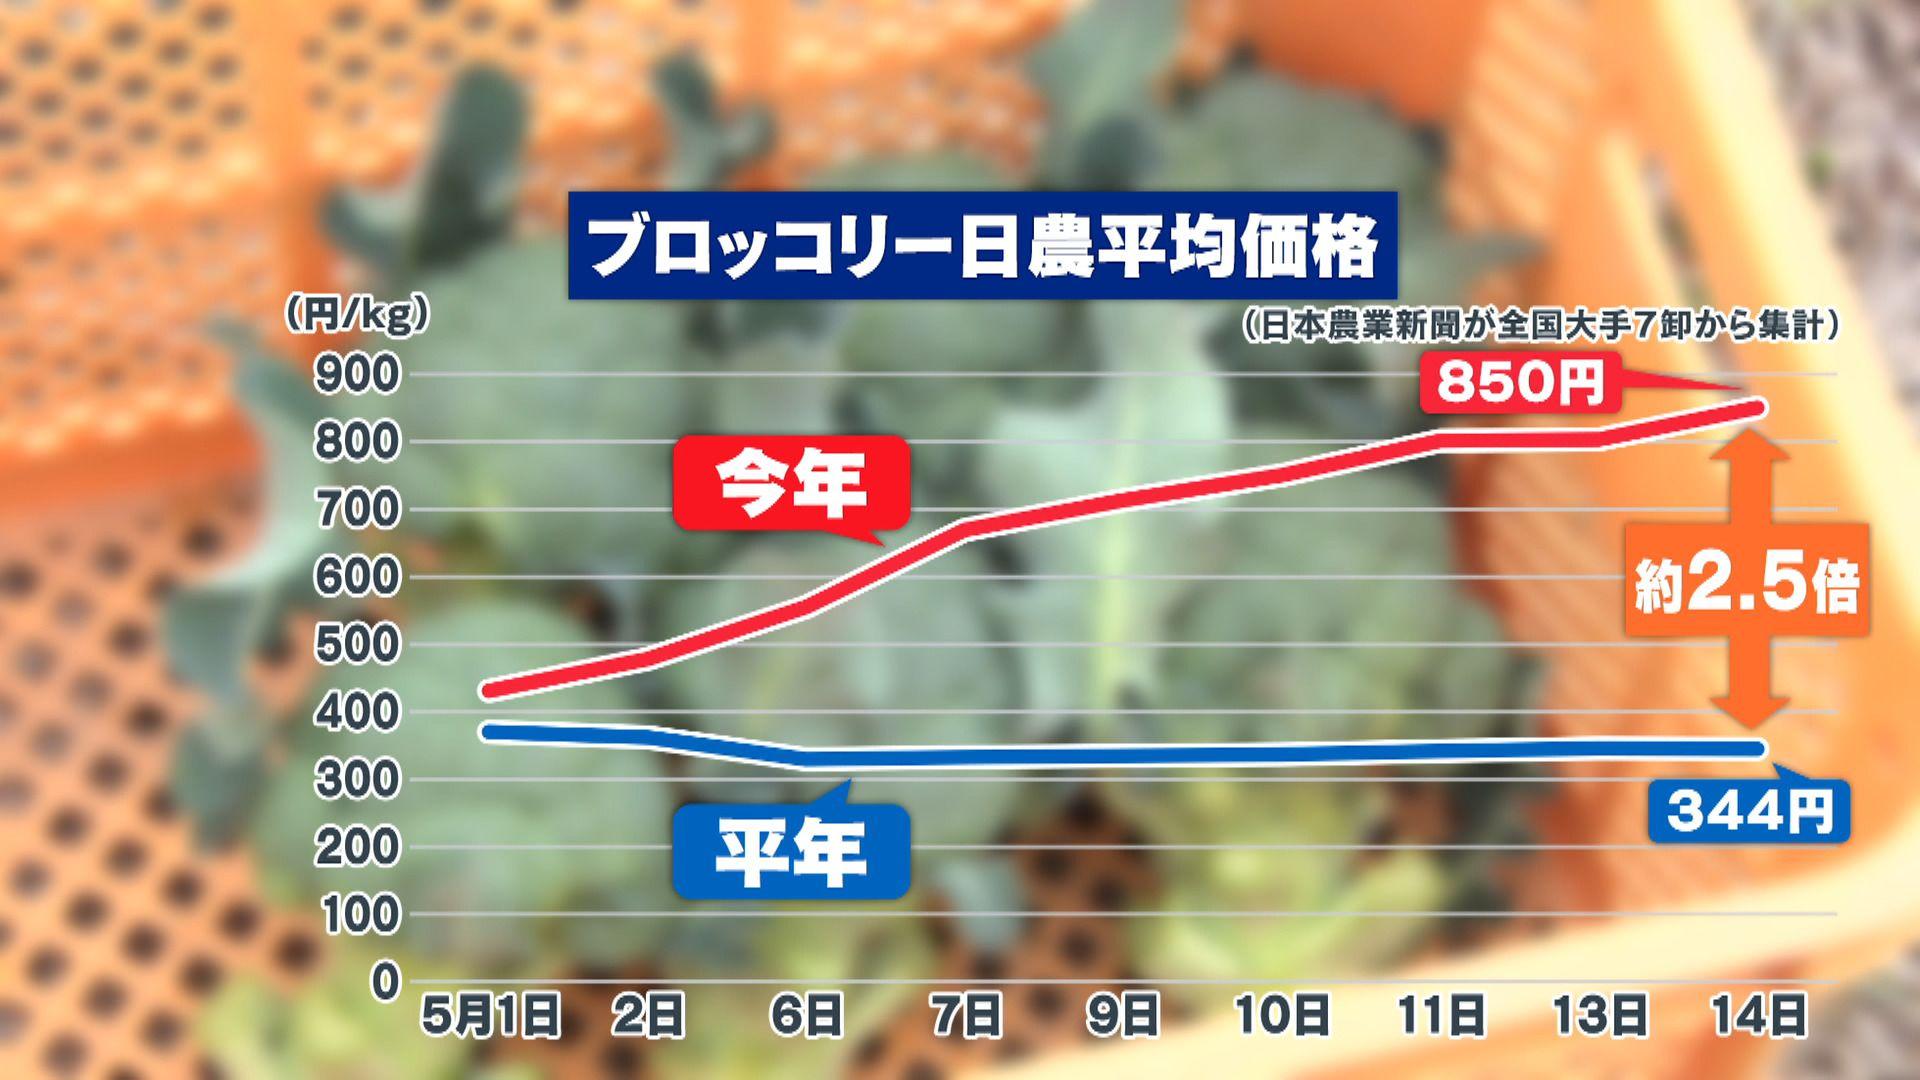 め８野菜高騰⑤ブロッコリー日農平均価格